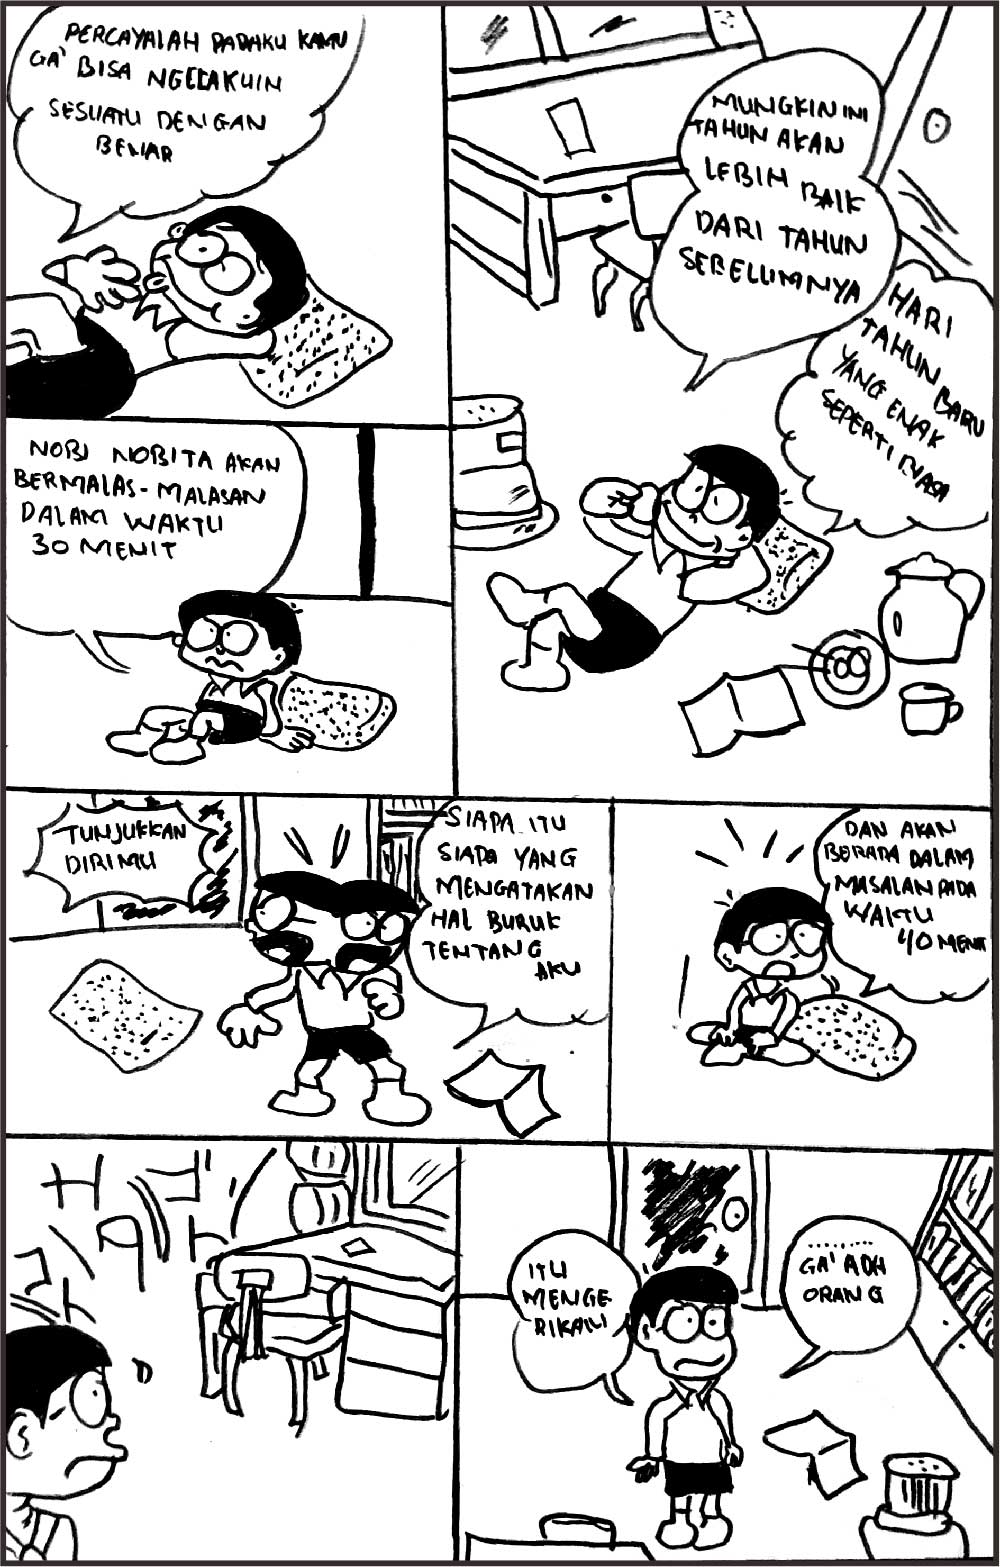 Cerita Lucu Kartun Doraemon Gambar Gokil